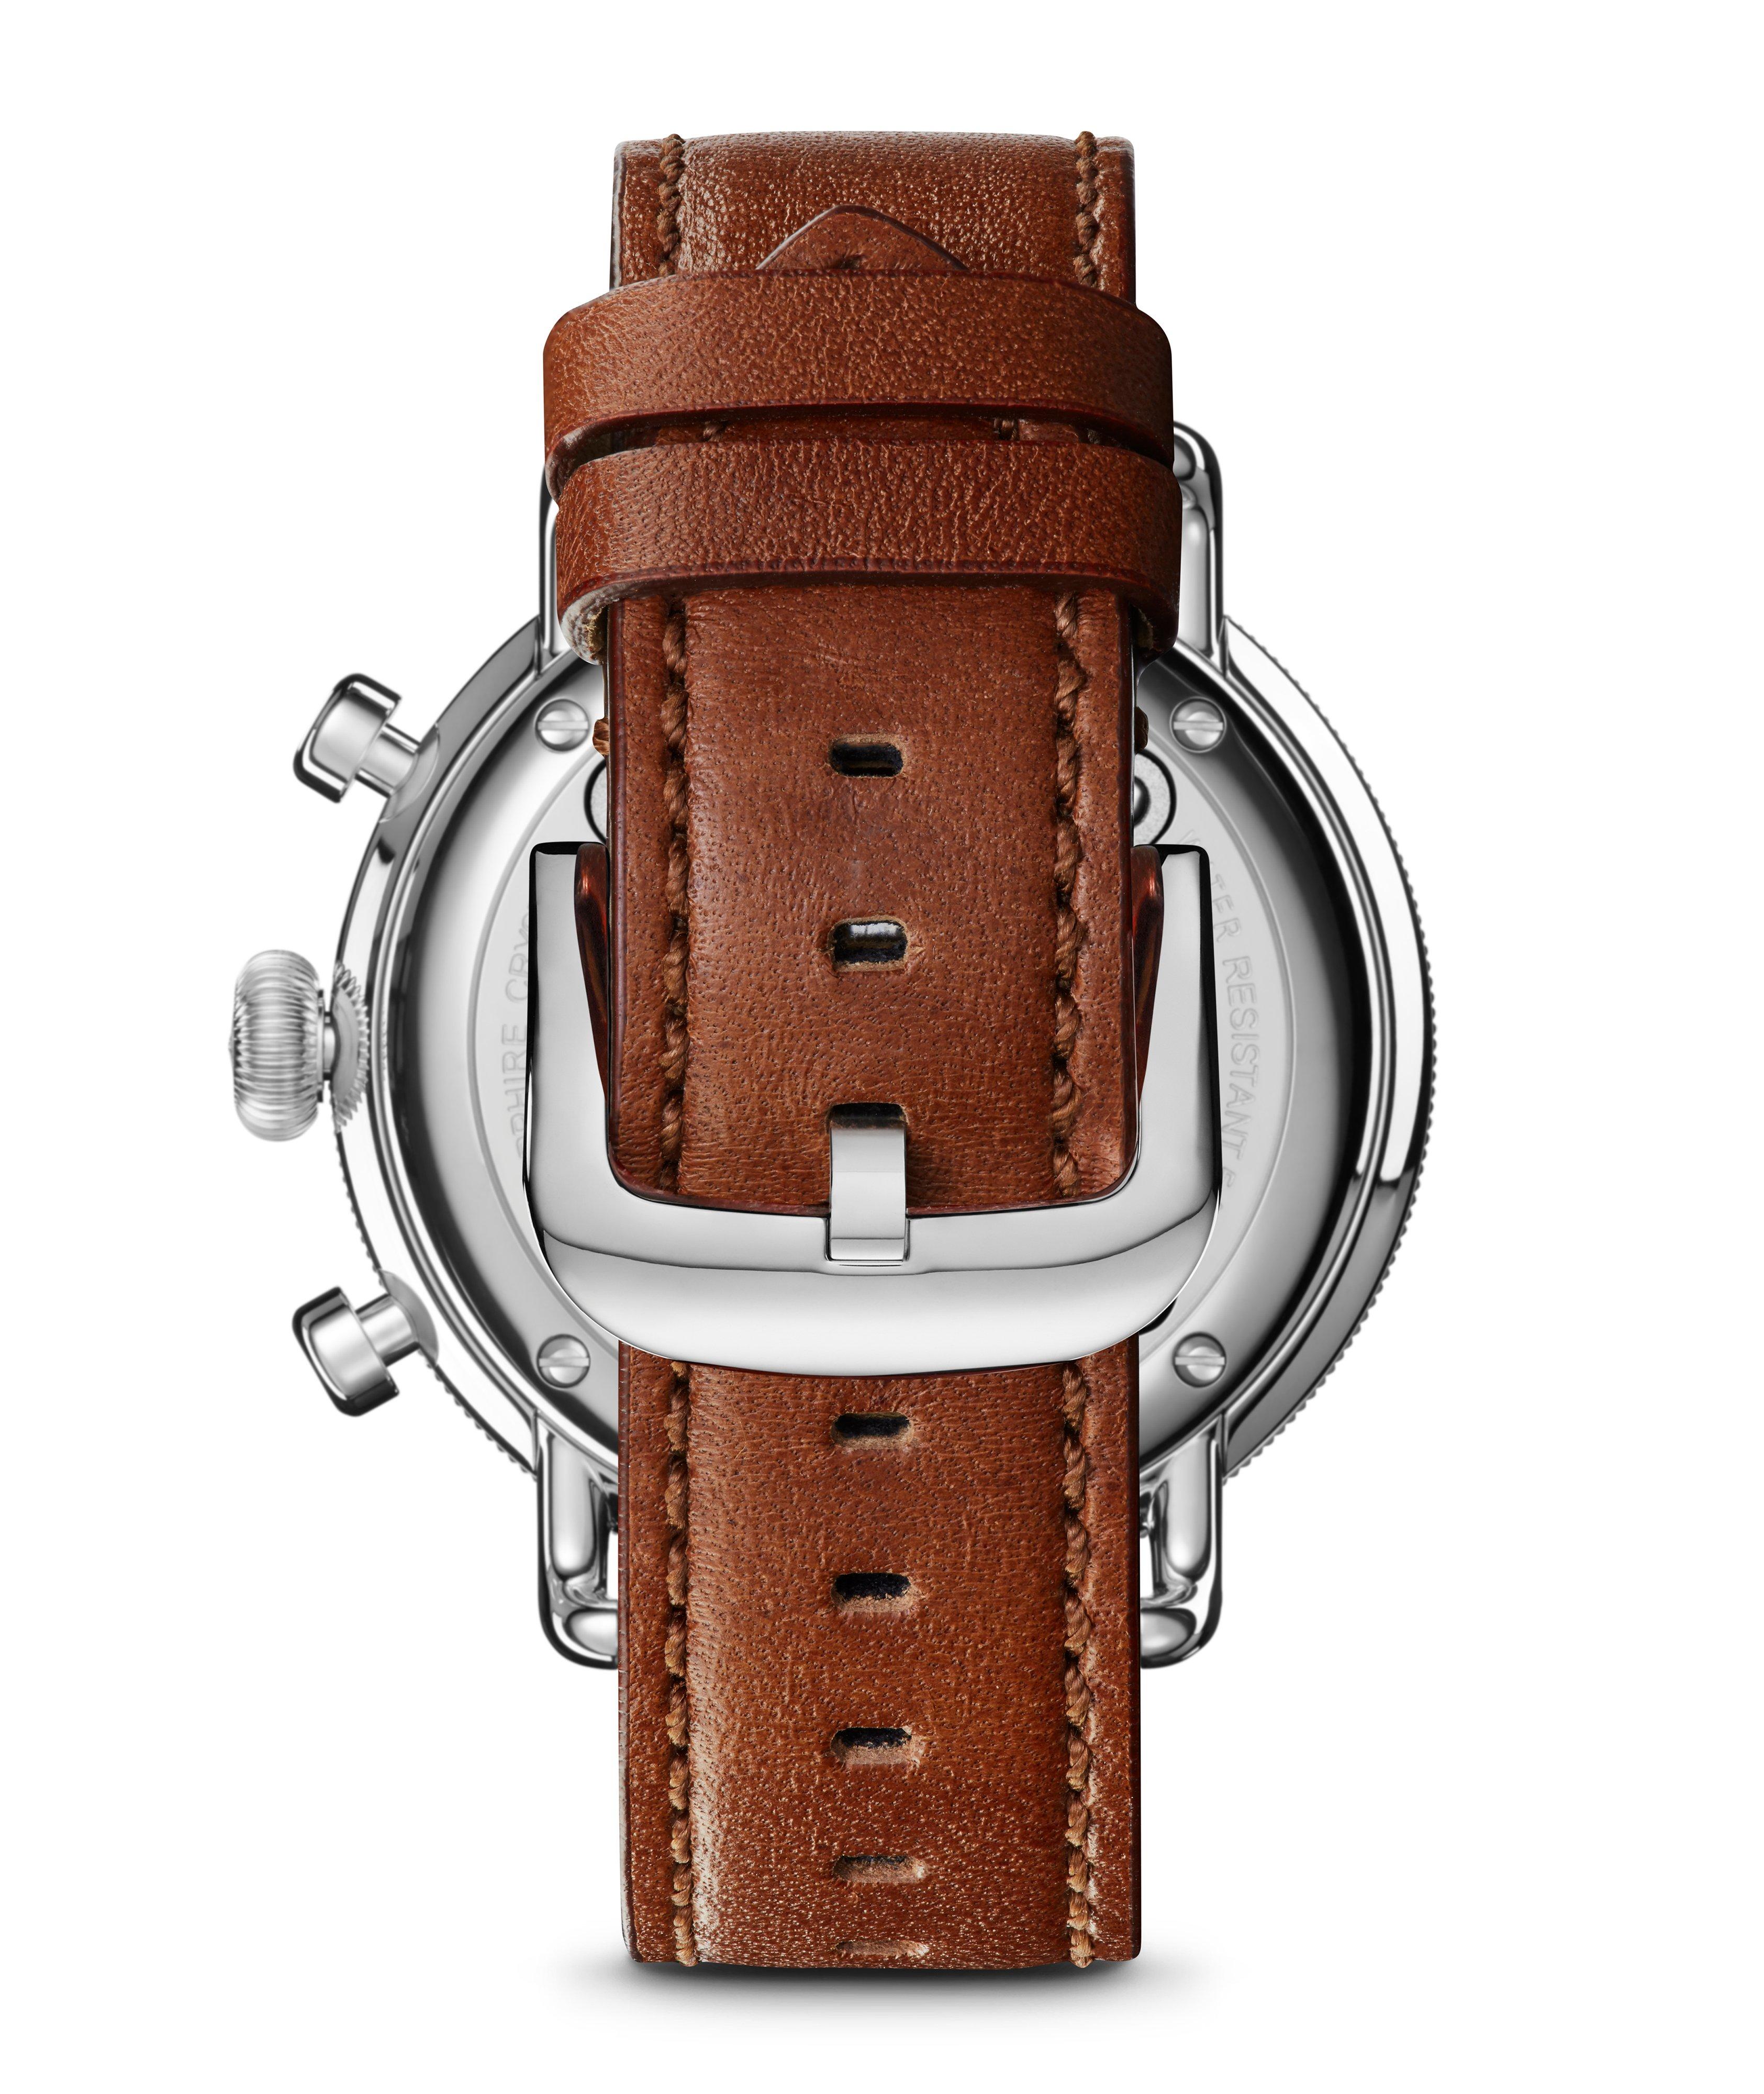 Montre-chronographe Canfield avec bracelet en cuir image 2